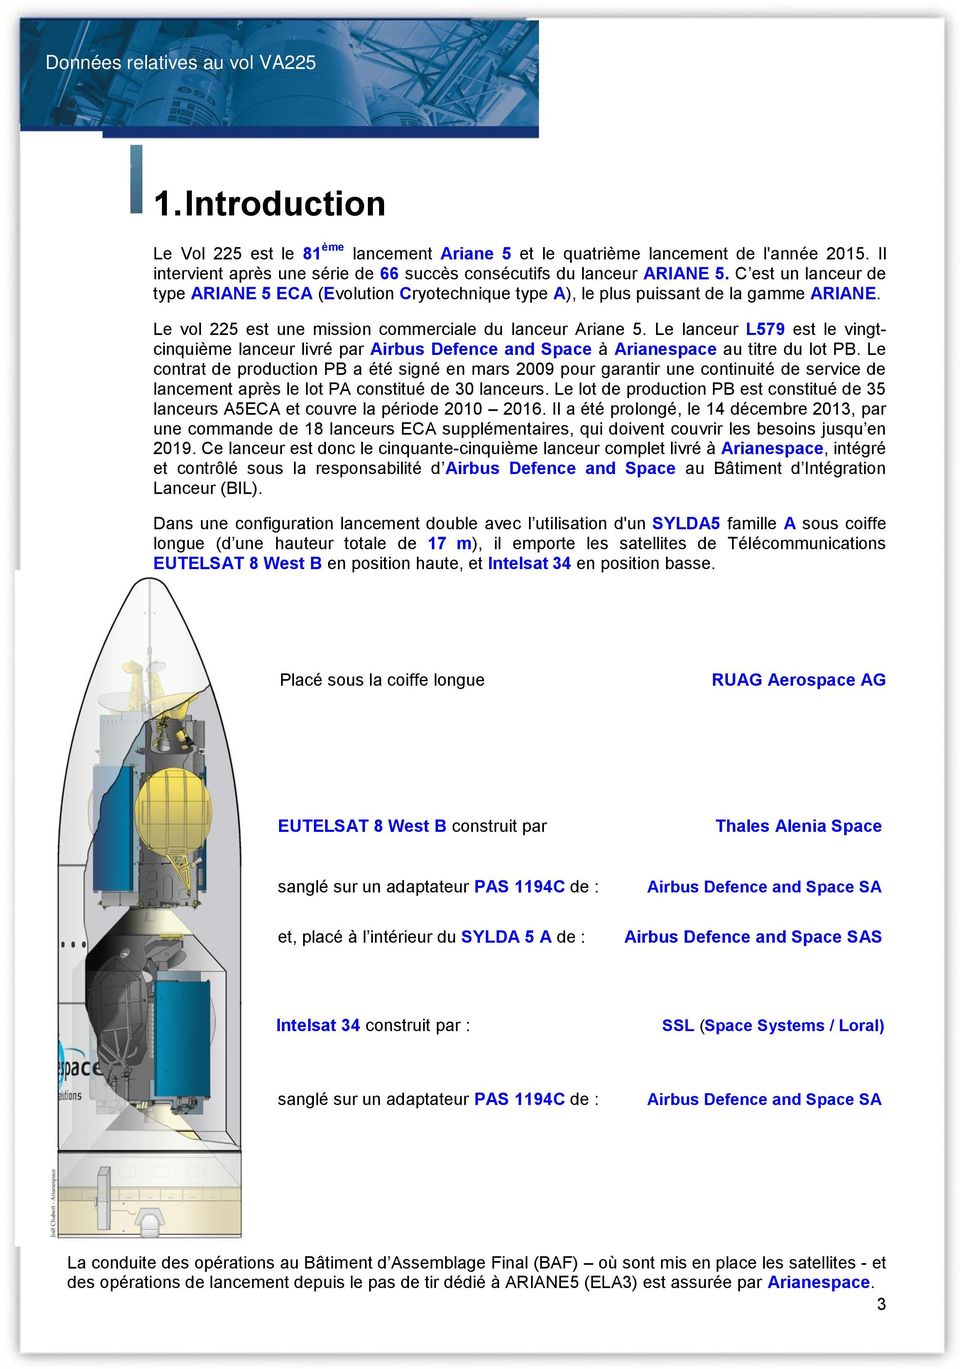 Le lanceur L579 est le vingtcinquième lanceur livré par Airbus Defence and Space à Arianespace au titre du lot PB.